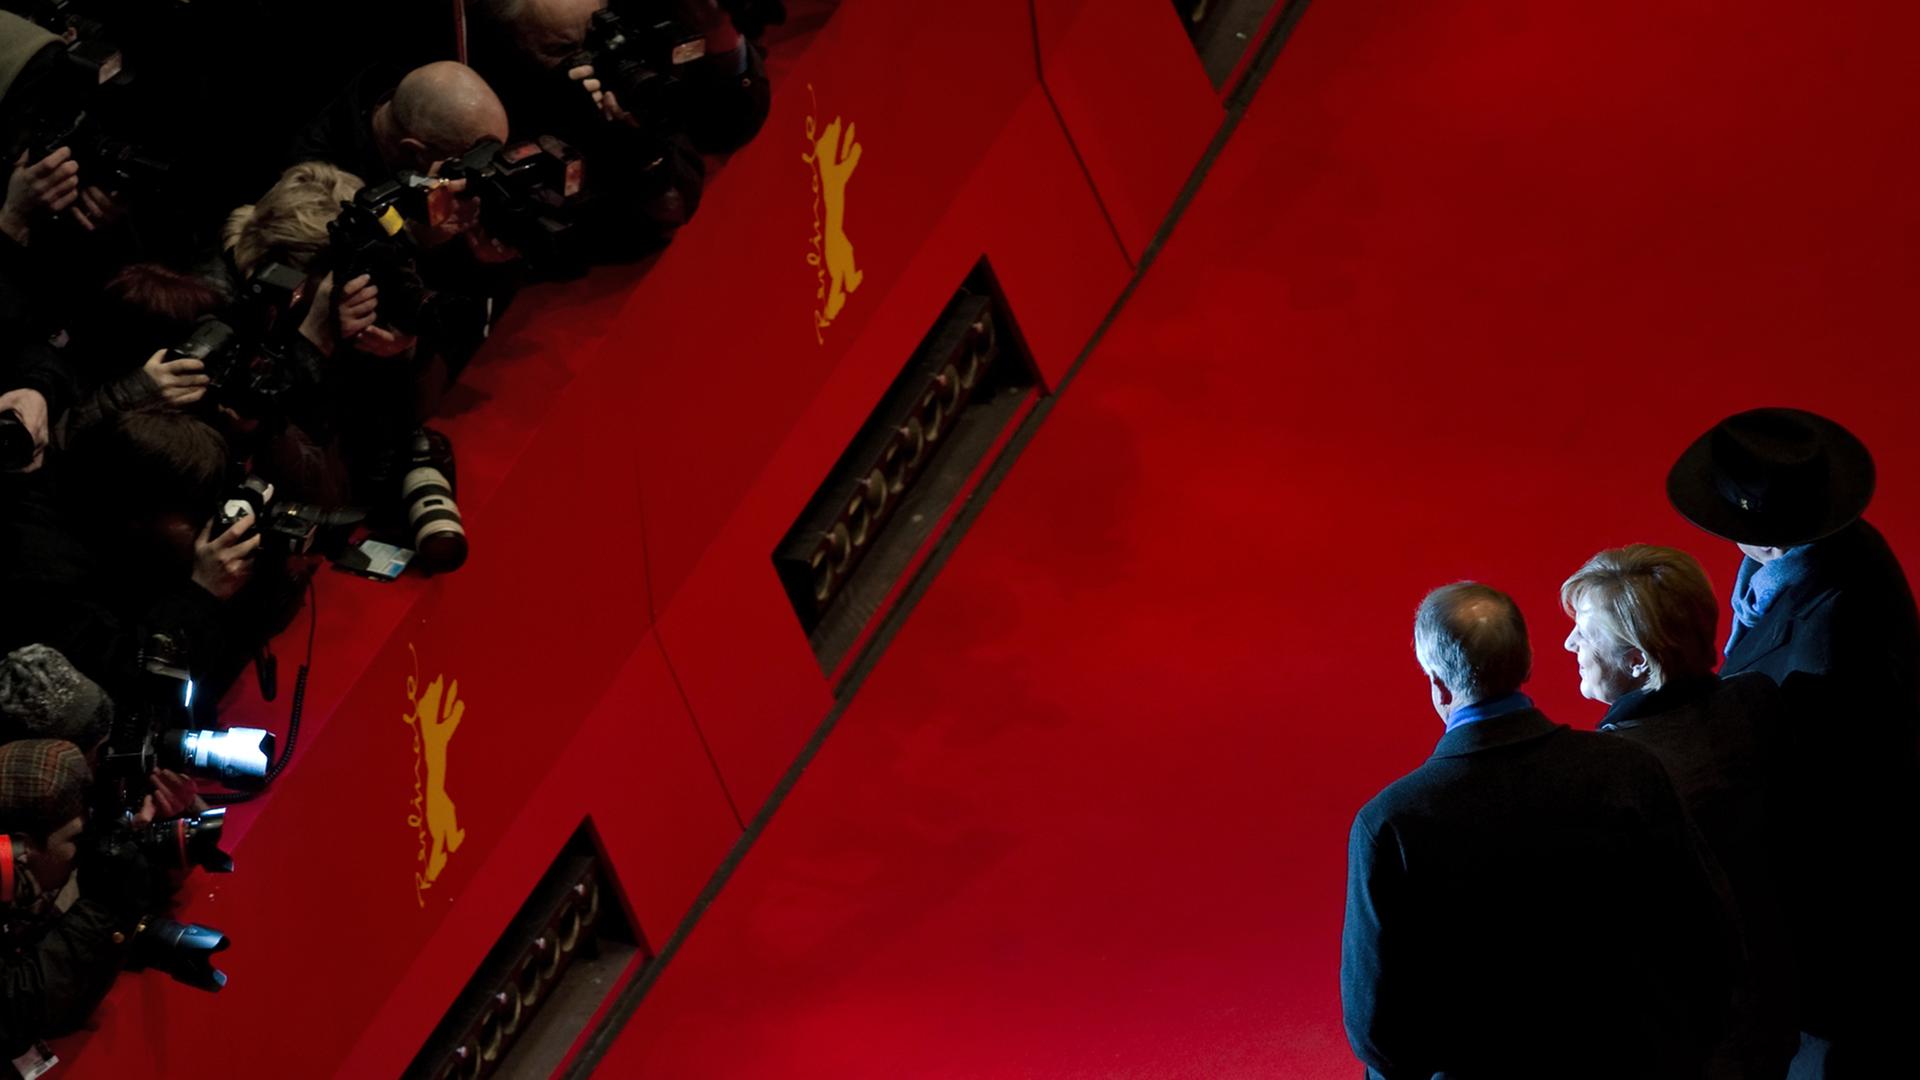 Berlinale-Direktor Dieter Kosslick (r.) steht mit Bundeskanzlerin Angela Merkel und dem damaligen Kulturstaatsminister Bernd Neumann am 13. Februar 2011 vor der Premiere des Films "Pina" auf dem Roten Teppich der 61. Berlinale.